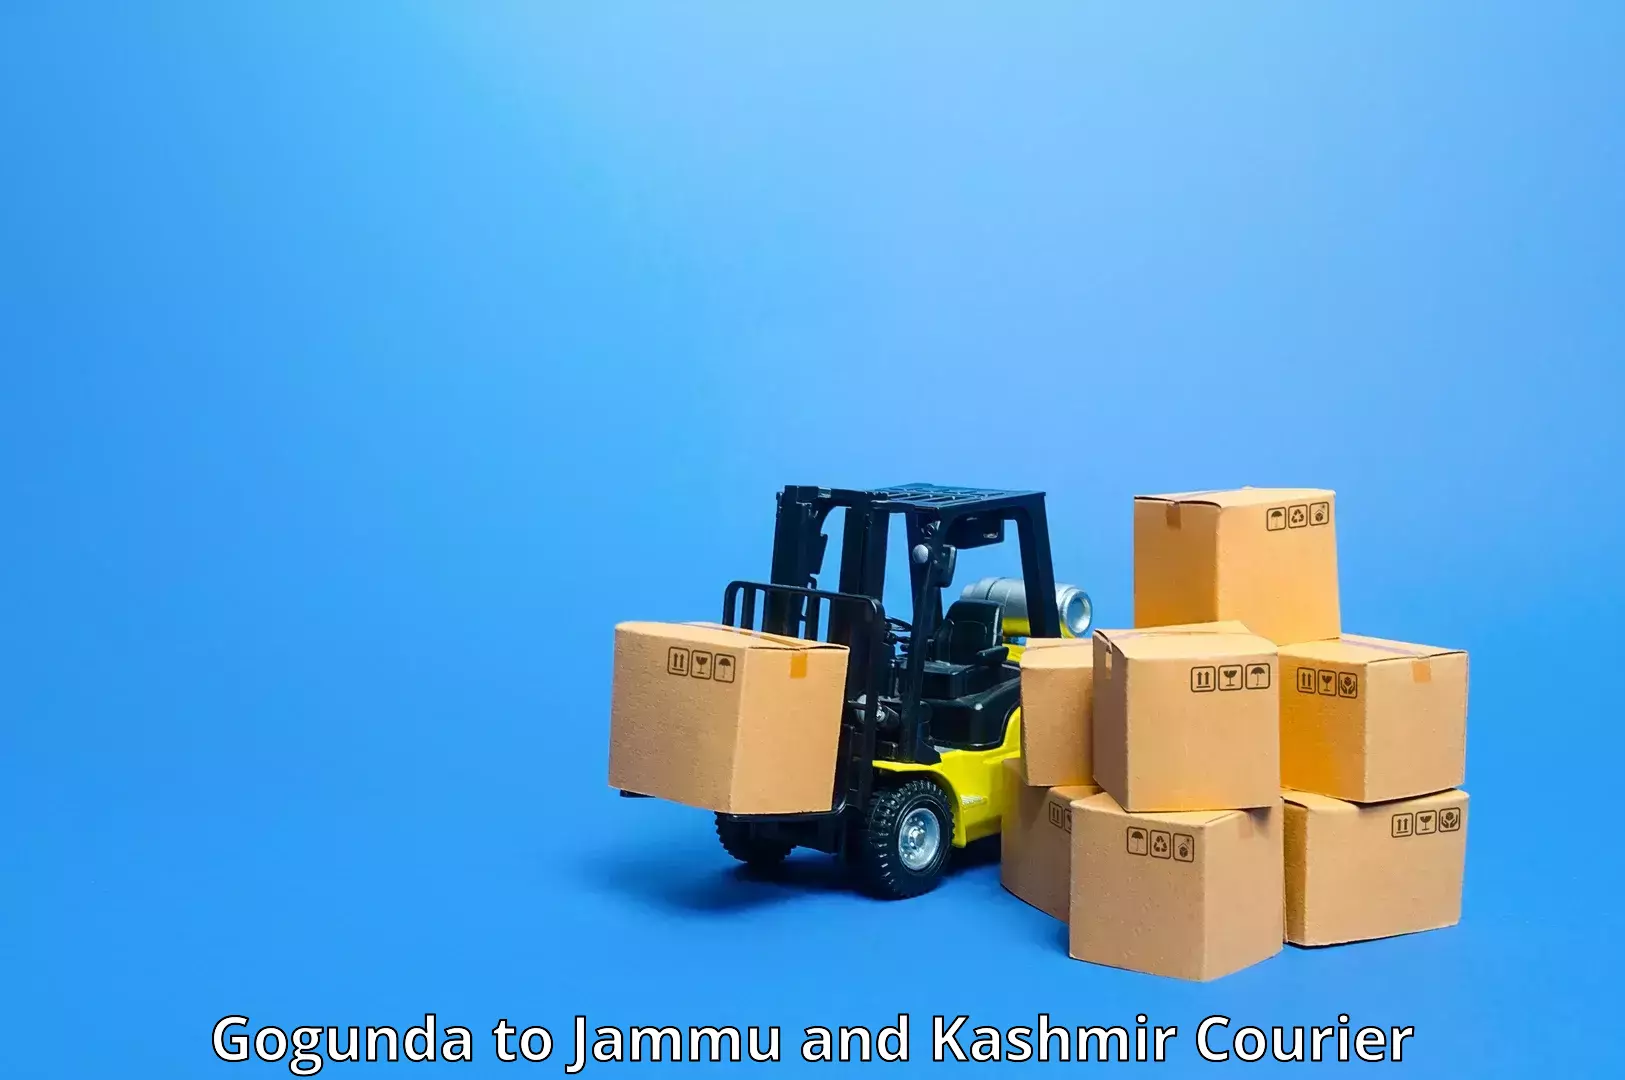 High-capacity shipping options Gogunda to Shopian